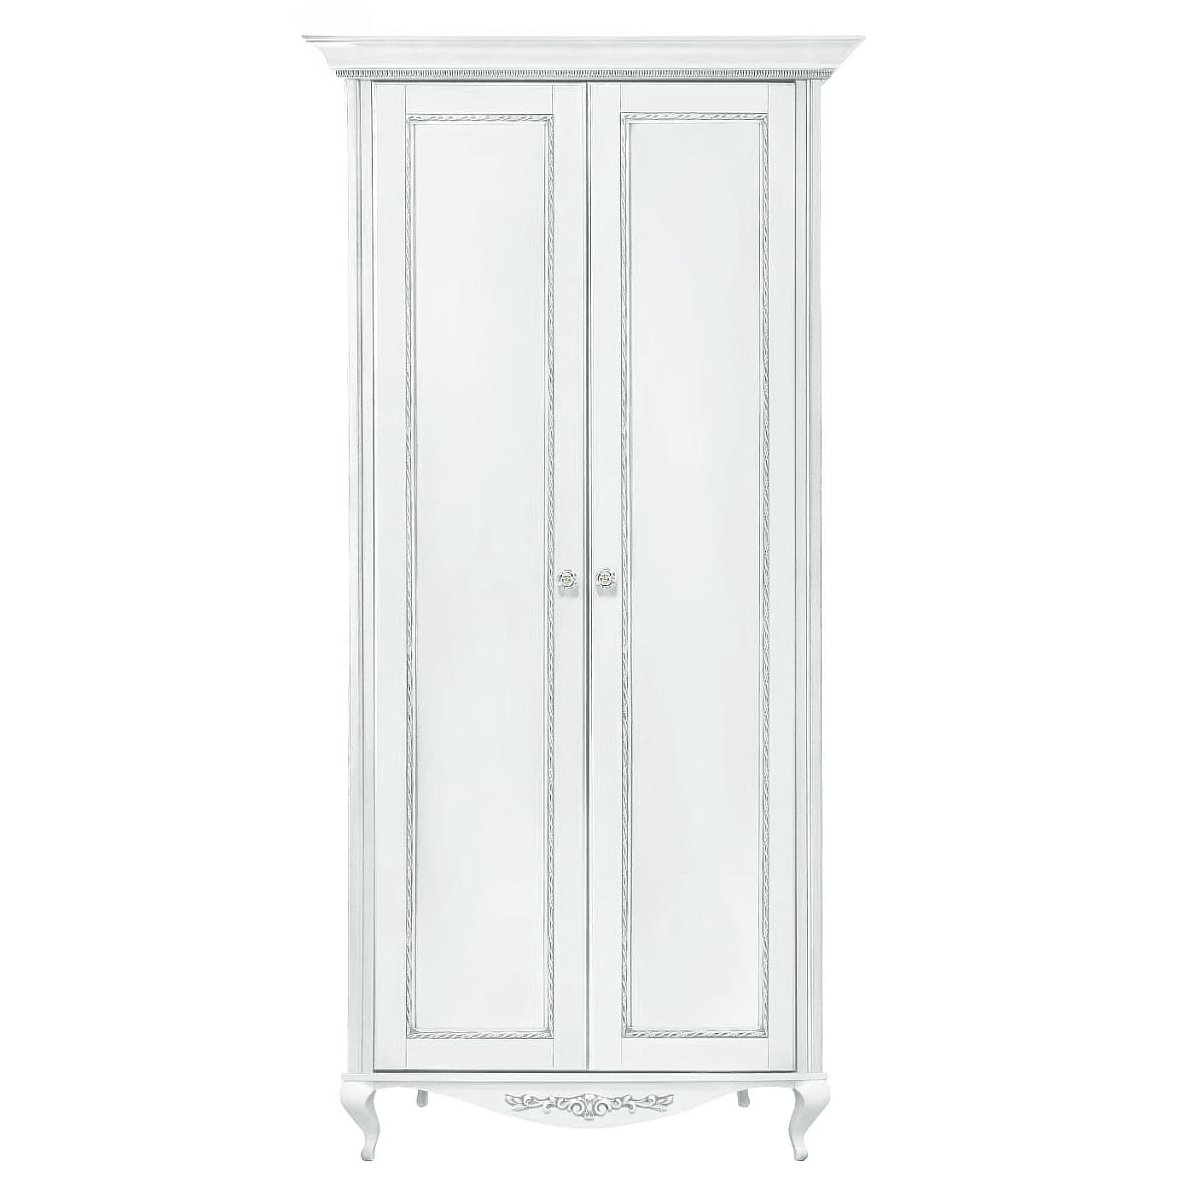 Шкаф платяной Timber Неаполь, 2-х дверный с полками 114x65x227 см, цвет: белый с серебром (Т-522П/BA)Т-522П